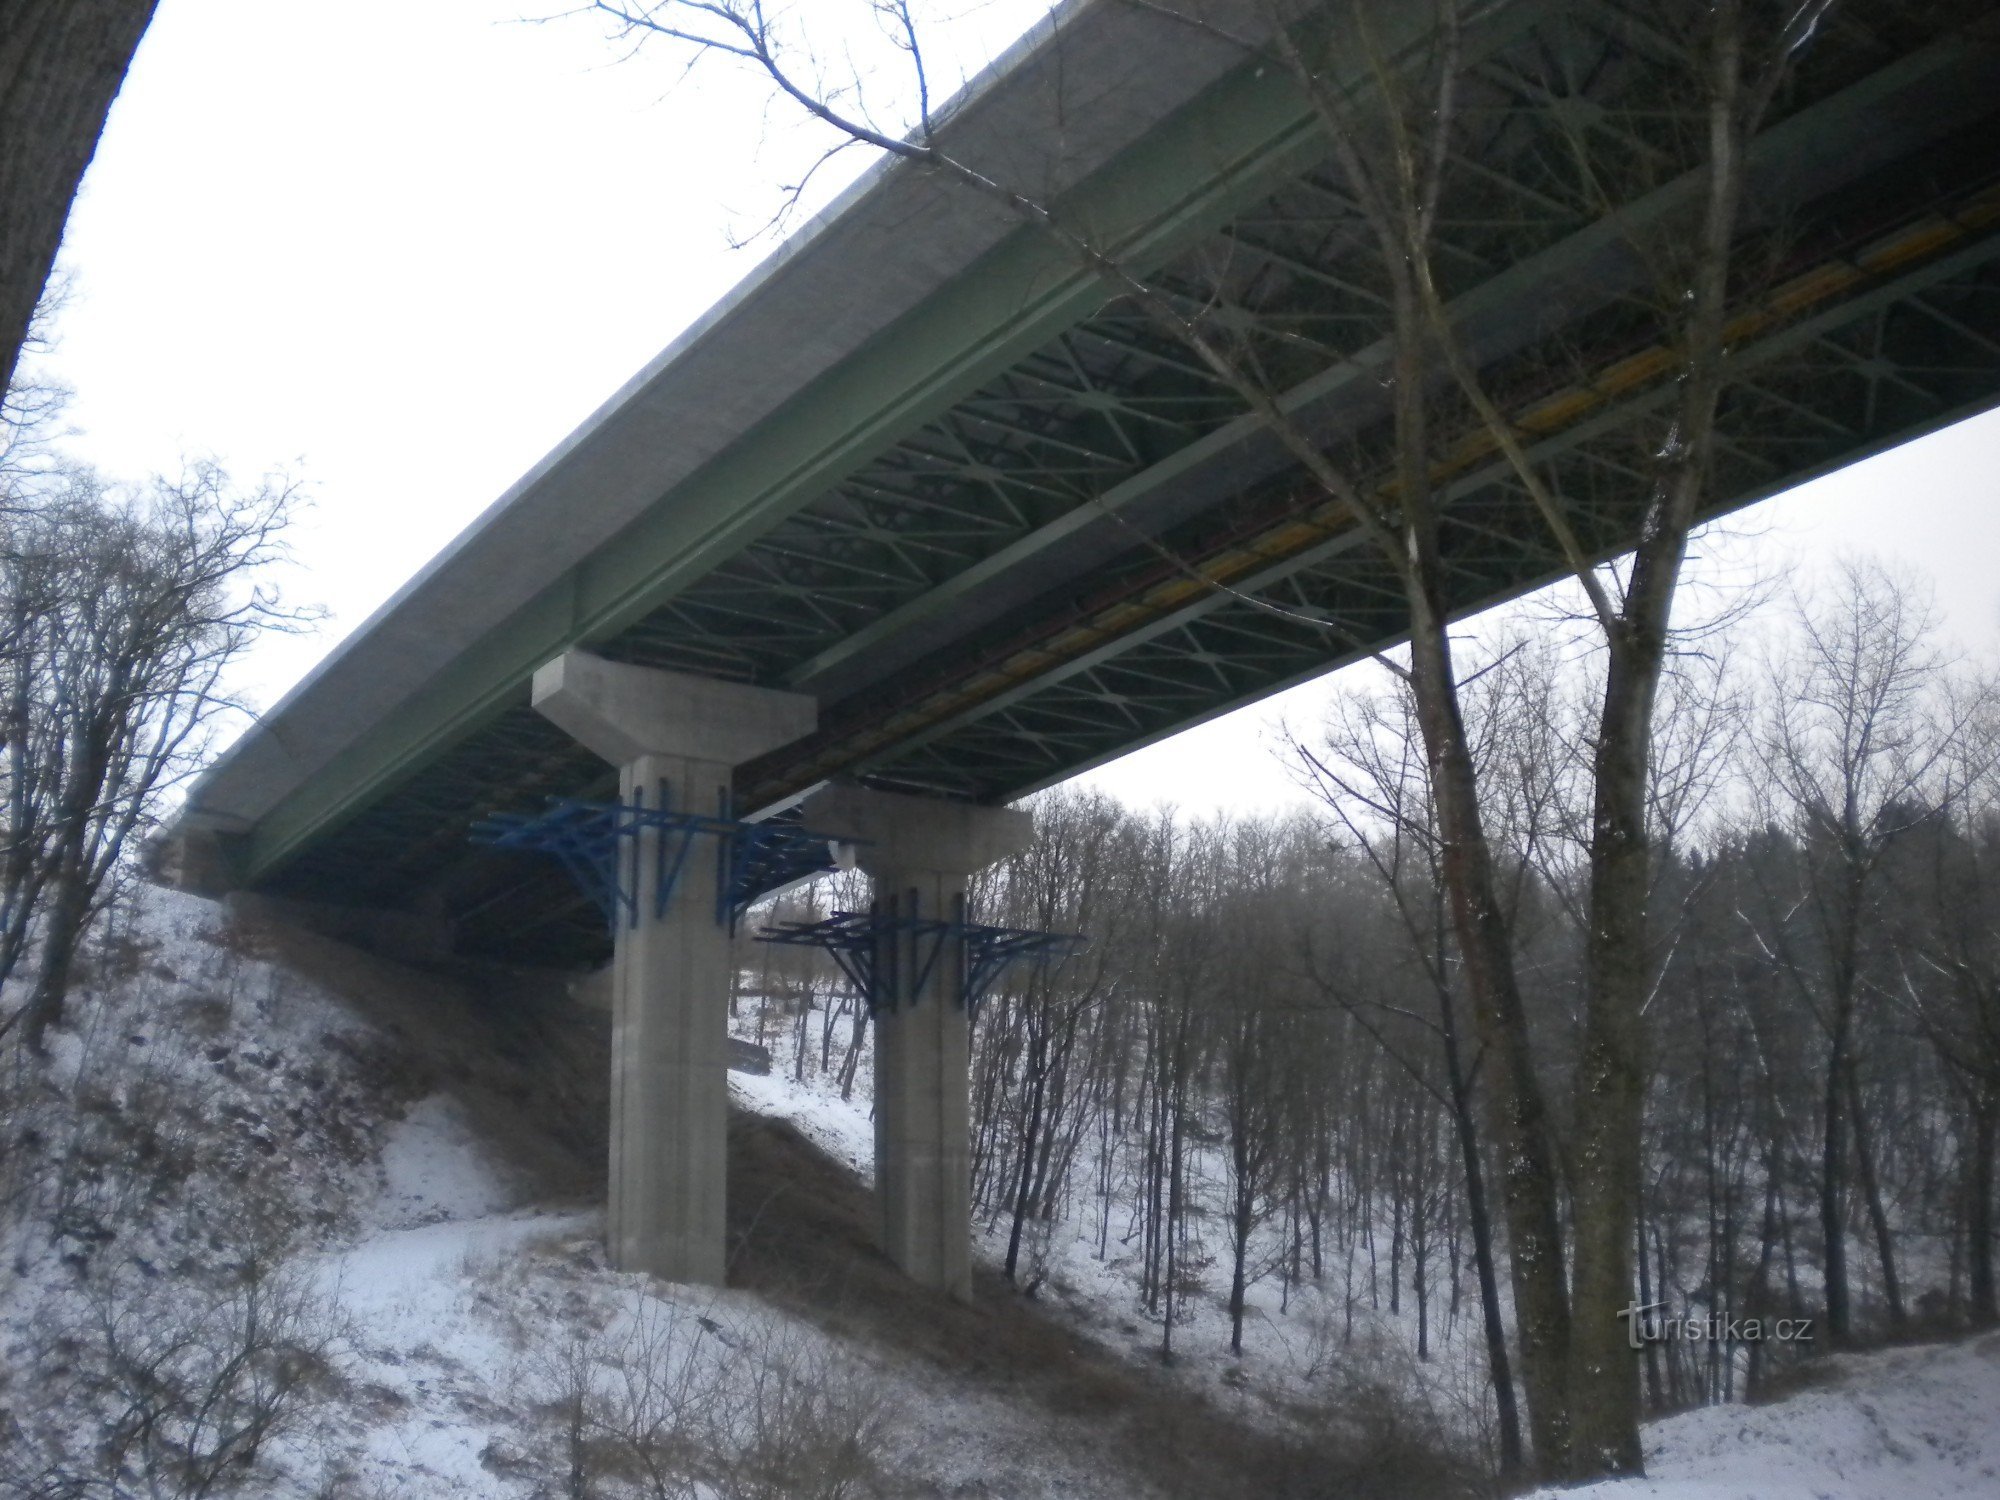 een kleine snelwegbrug over de vallei.